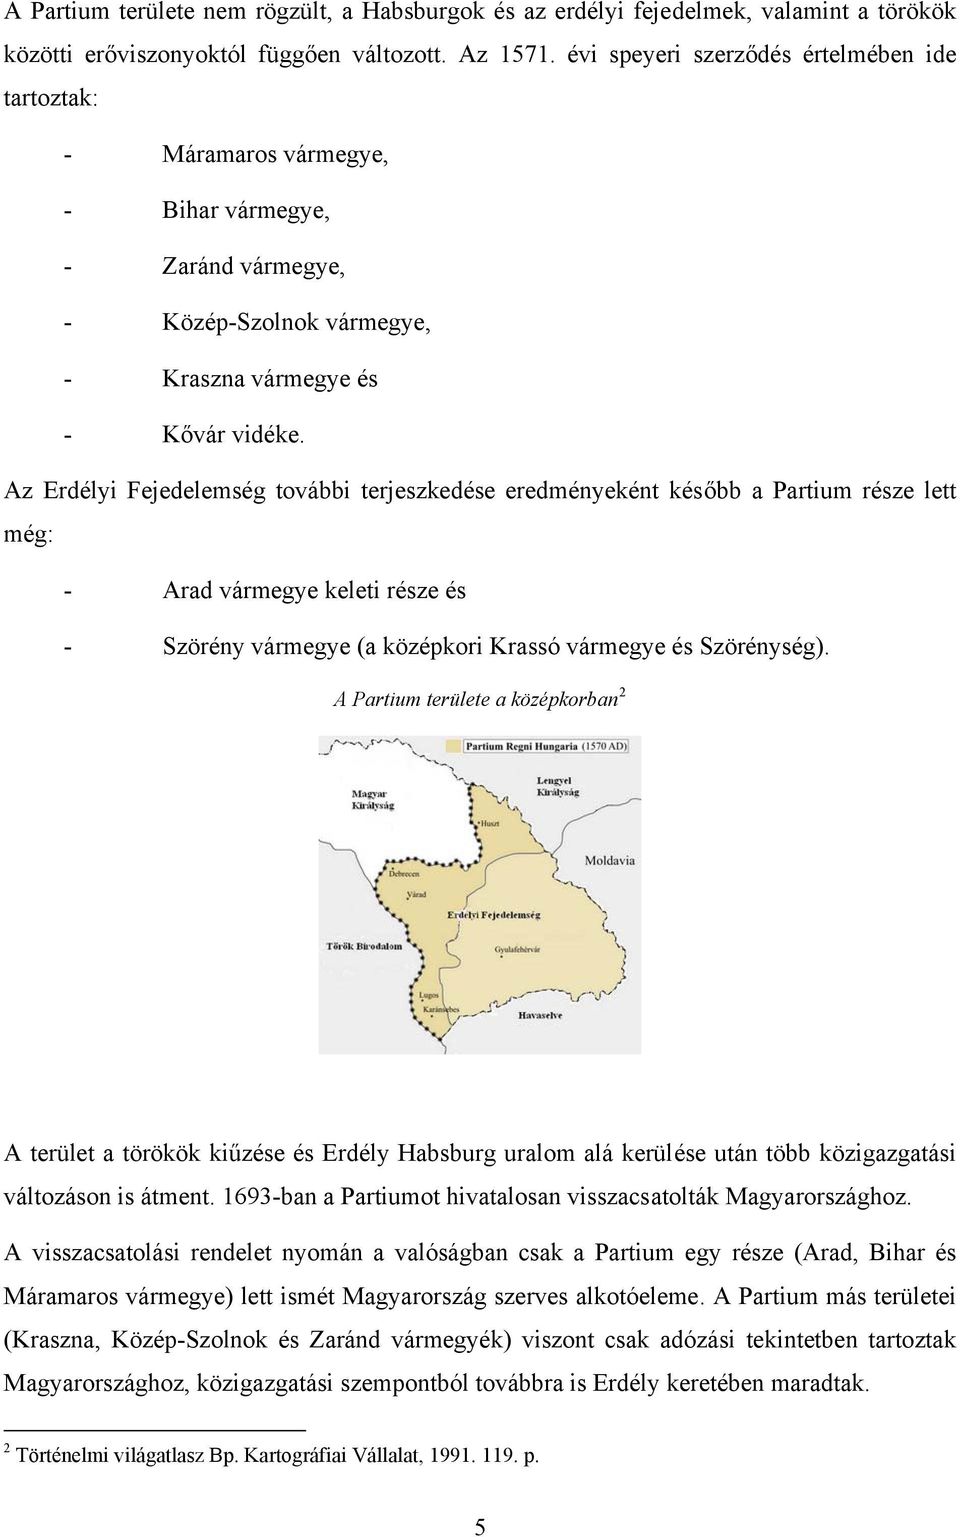 Az Erdélyi Fejedelemség további terjeszkedése eredményeként később a Partium része lett még: - Arad vármegye keleti része és - Szörény vármegye (a középkori Krassó vármegye és Szörénység).